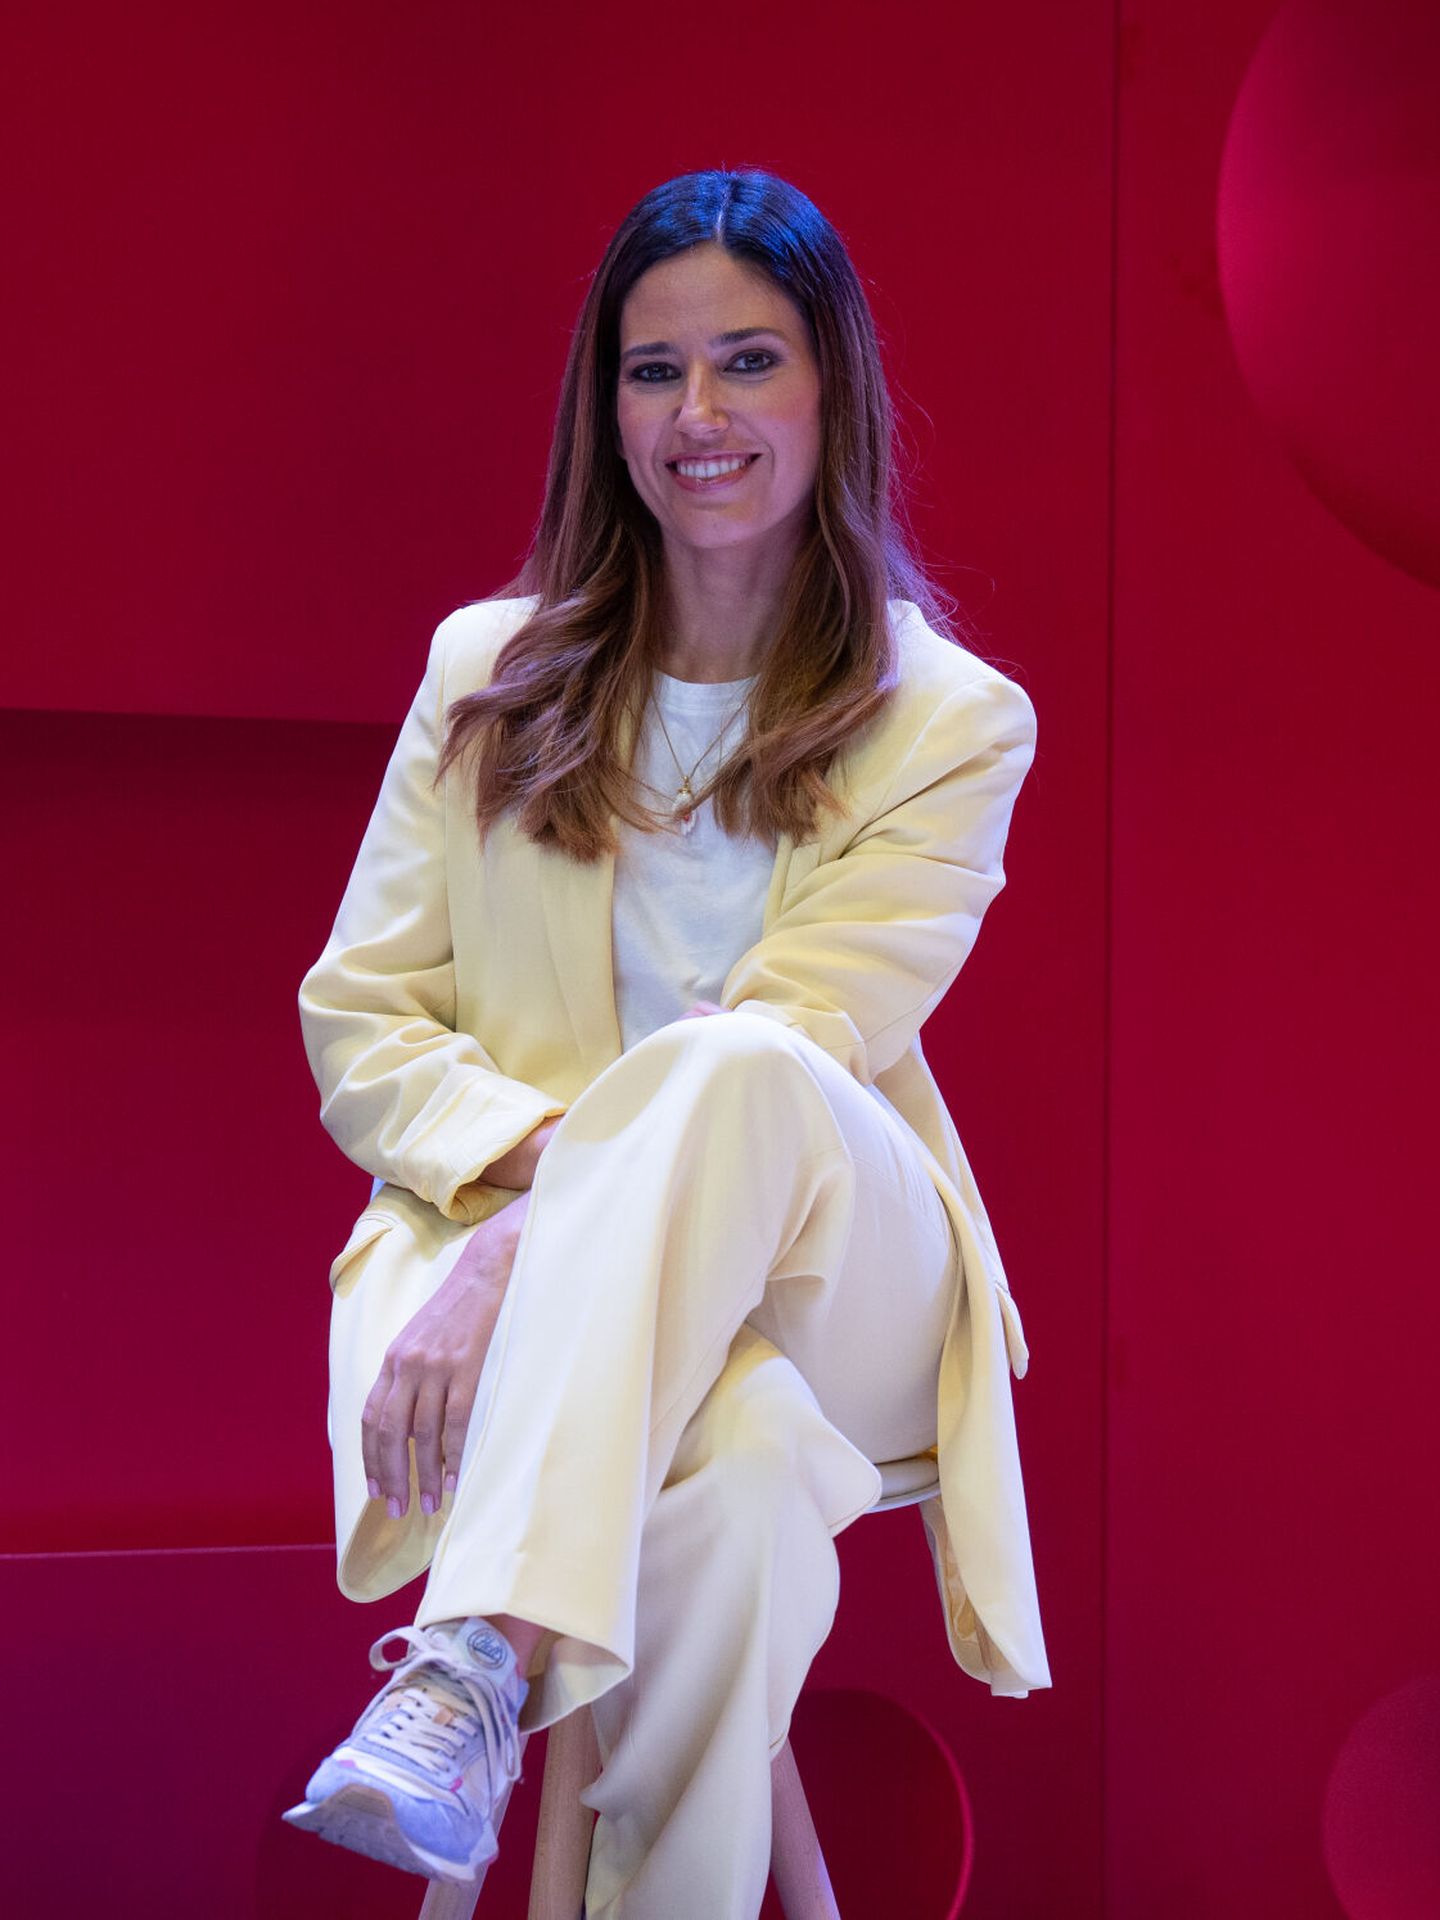 La presentadora Nuria Marín posa en la presentación de contenidos de TV3. (Europa Press/David Zorrakino)